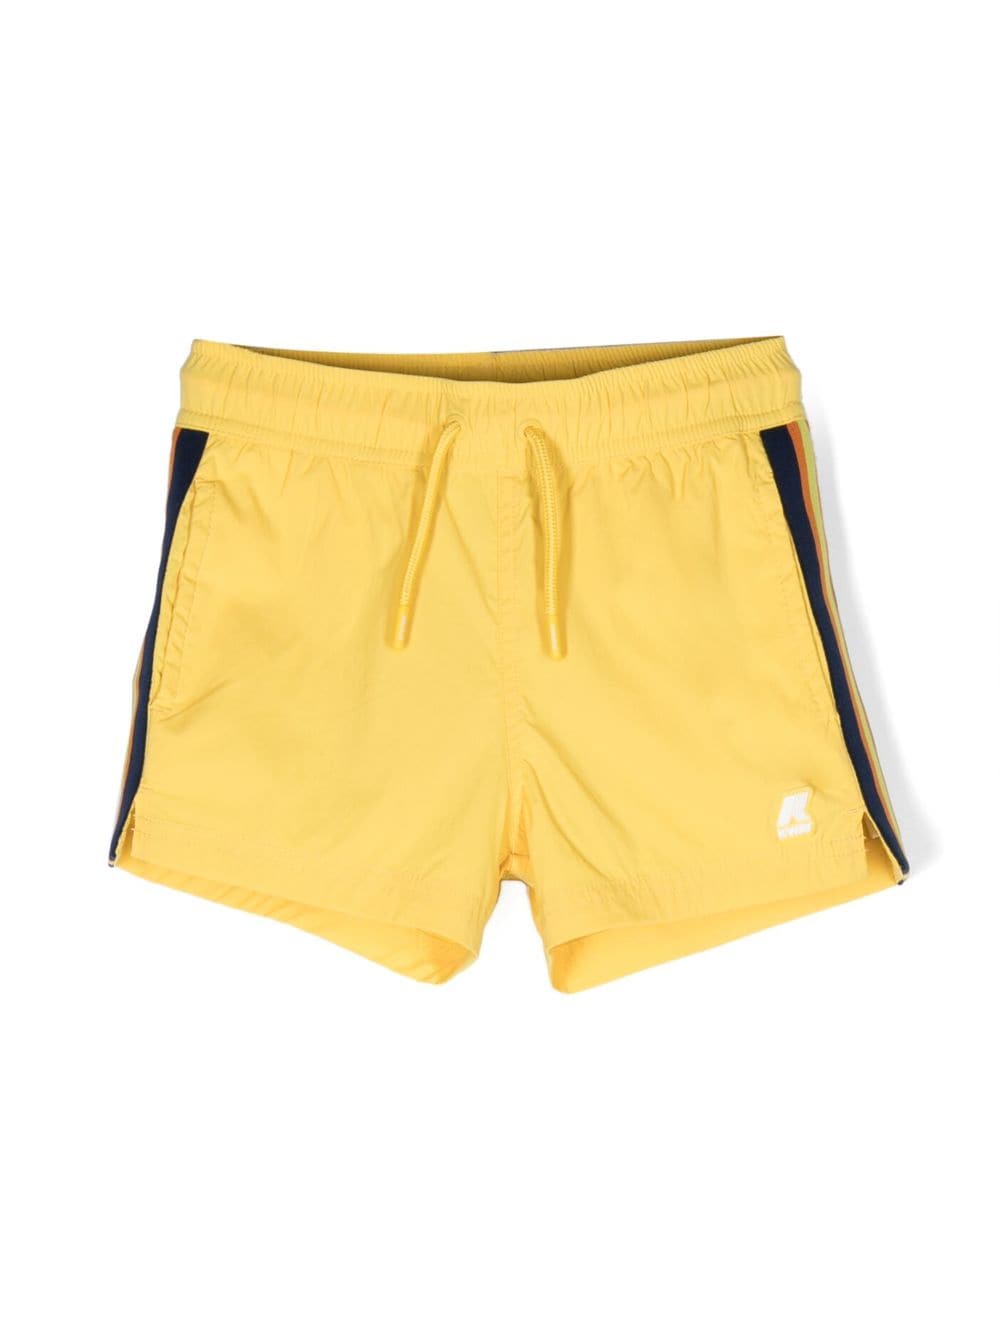 K-way Kids' Stripe-detailing Smiw Shorts In Yellow